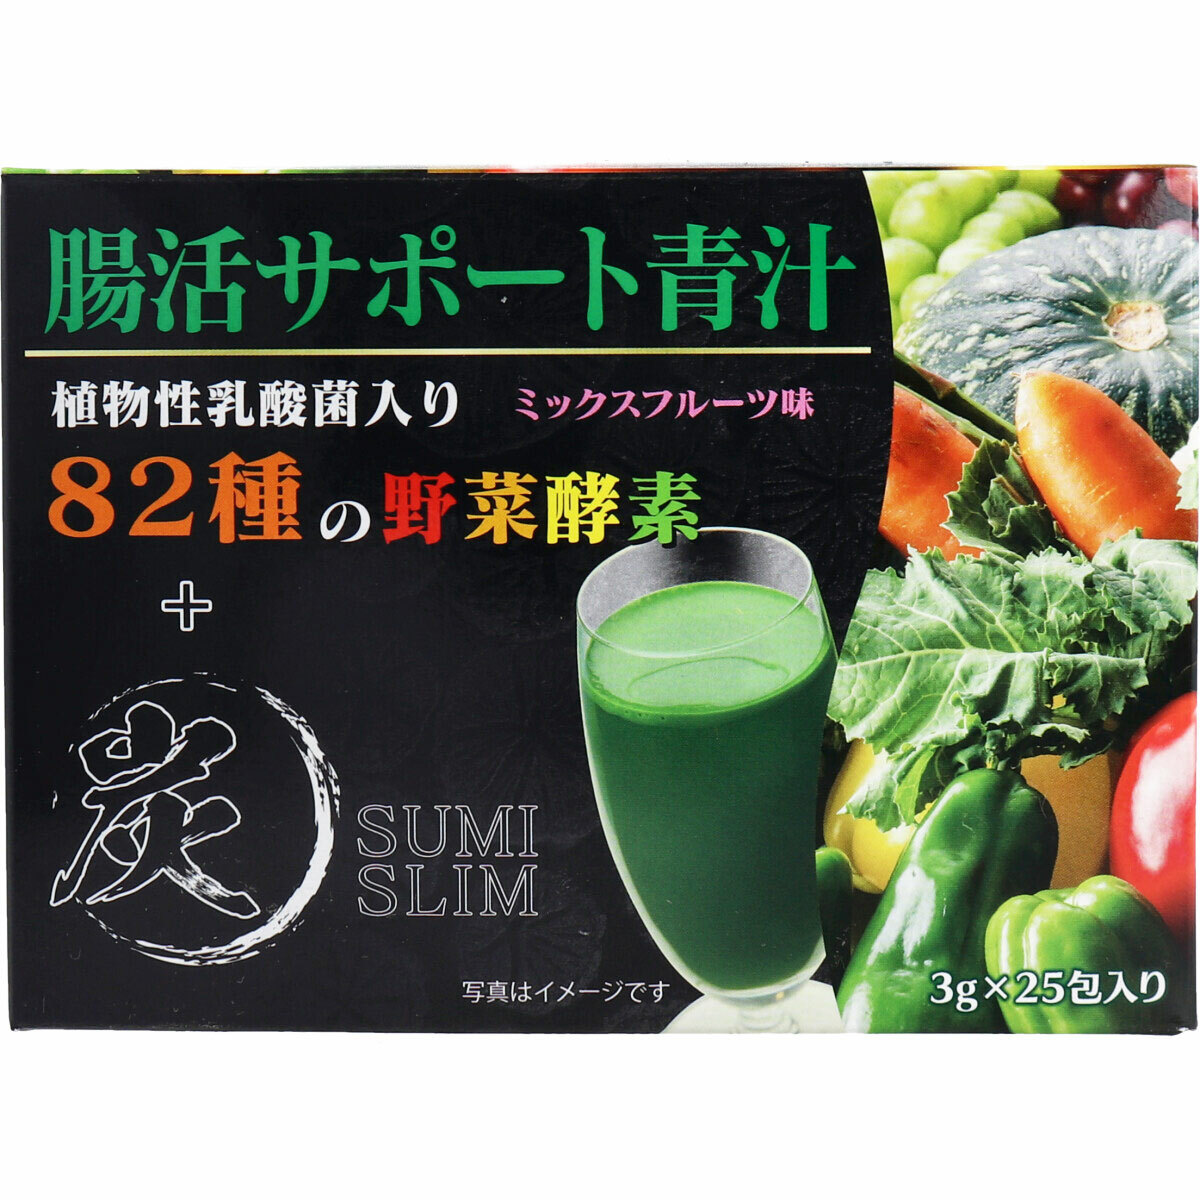 HIKARI Sumi Slim Aojiru Аодзиру с фруктово-овощными ферментами и бамбуковым углем, 25 пакетиков х 3г